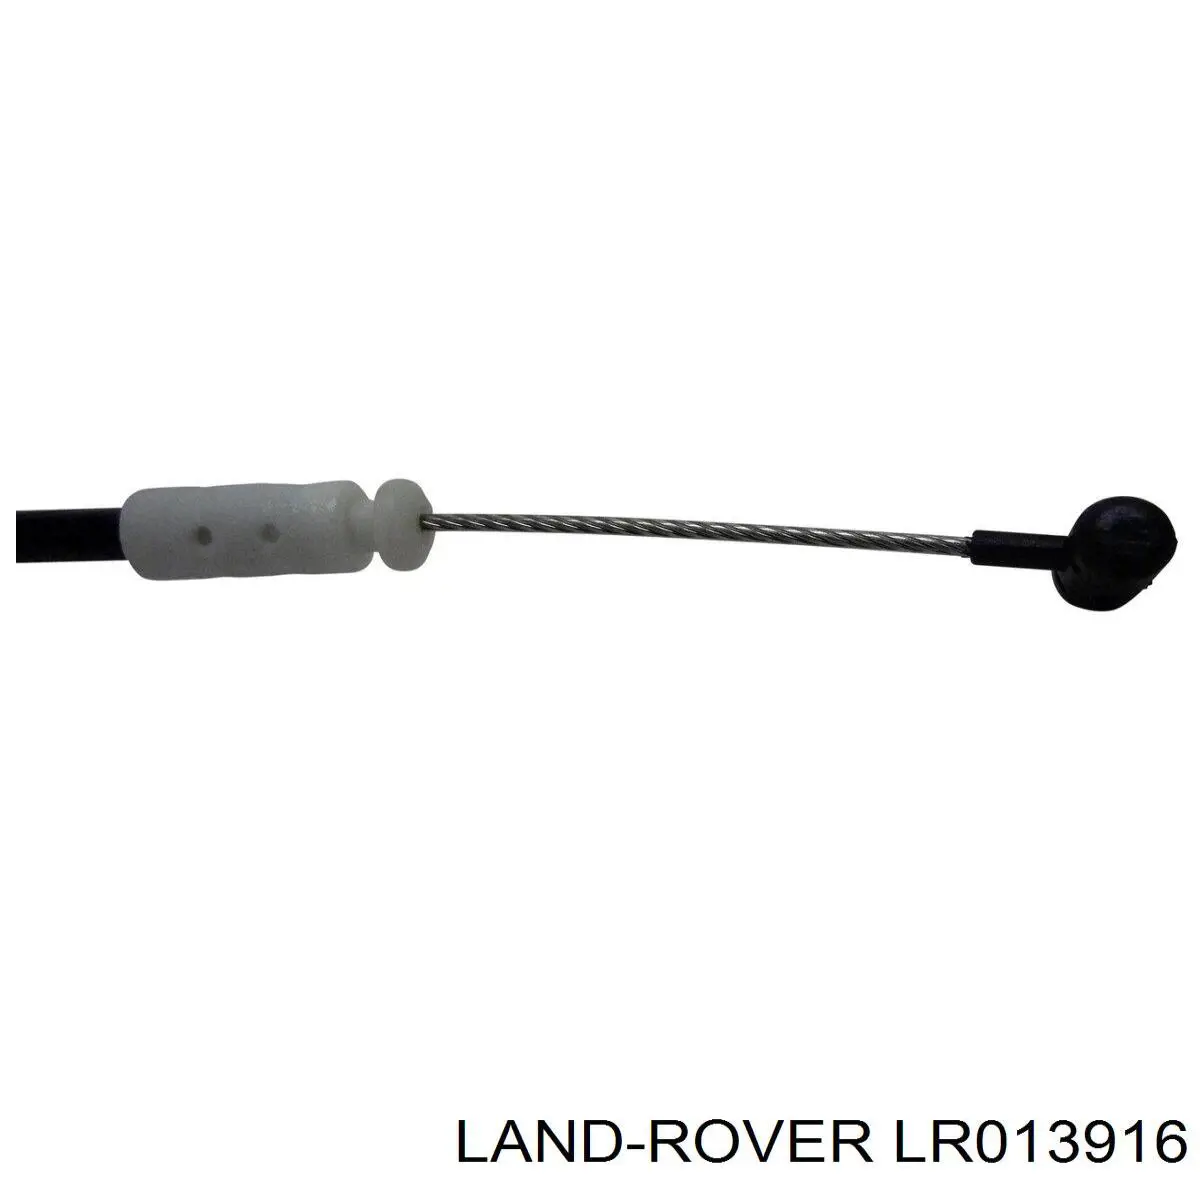 LR013916 Land Rover cable de accionamiento, desbloqueo de puerta delantera